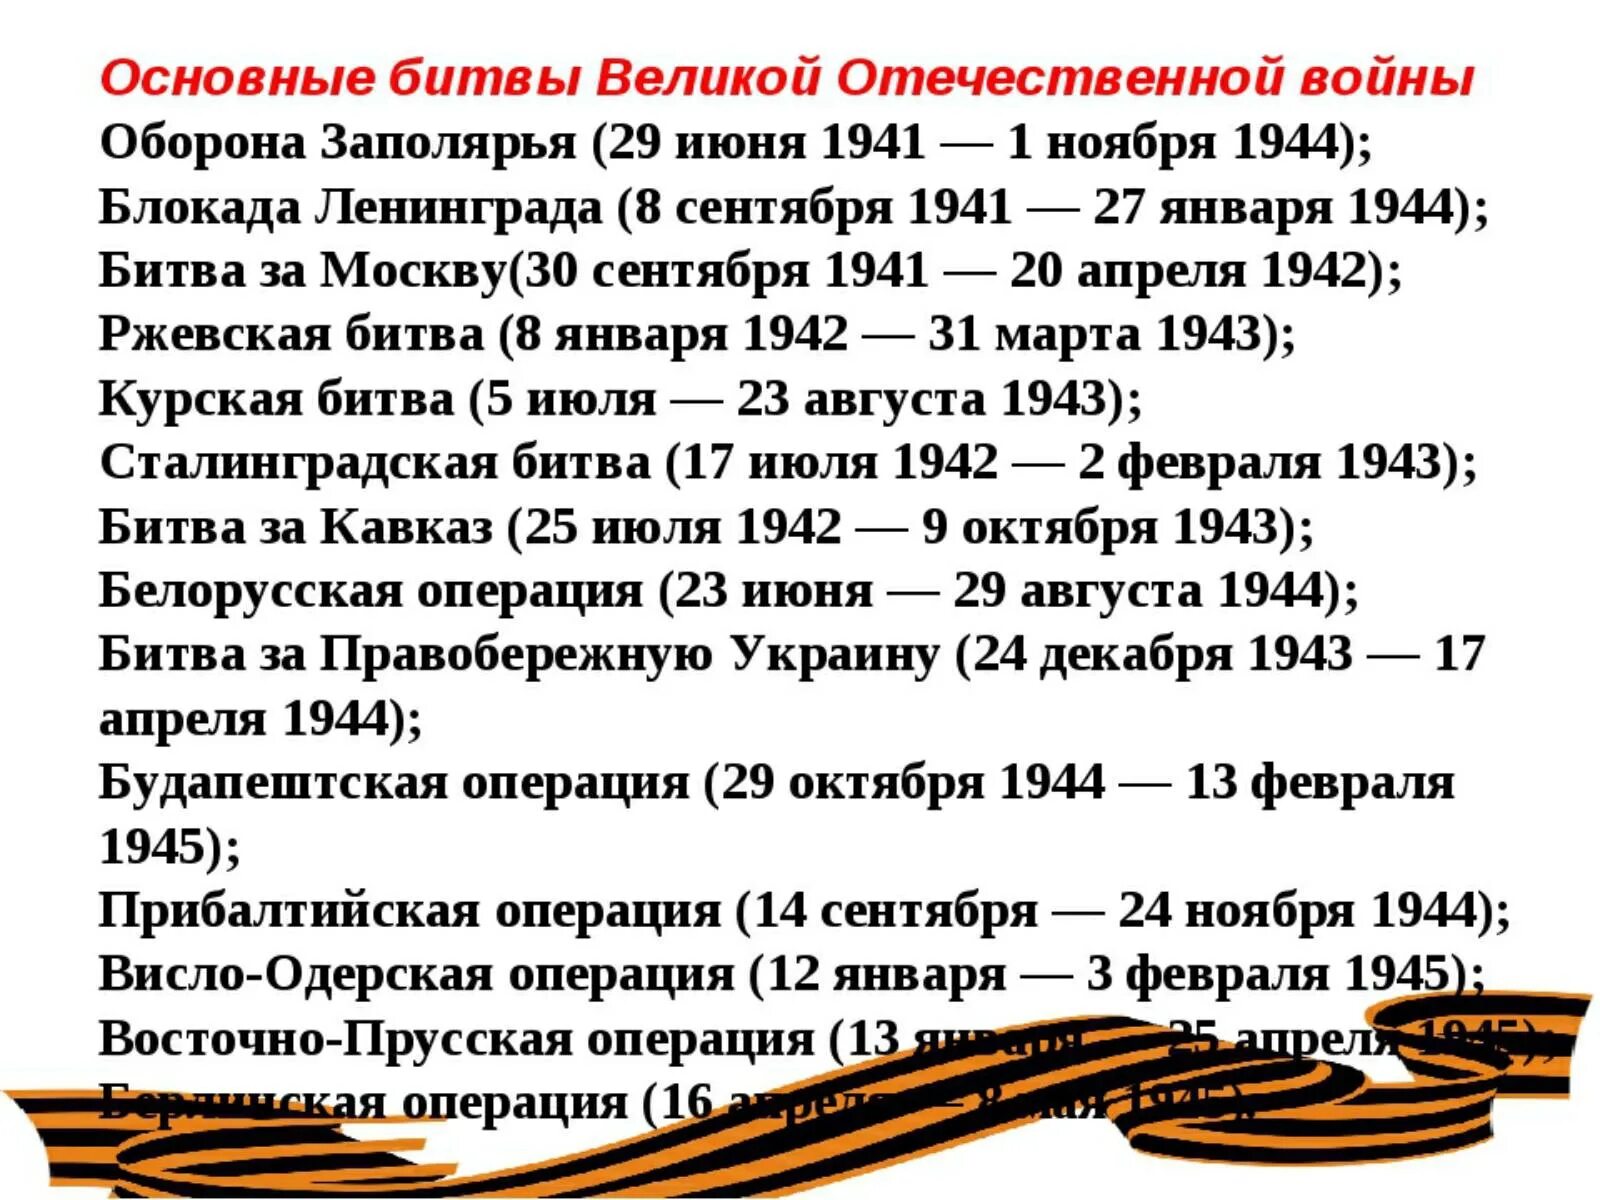 1941 1945 какое событие. Важнейшие битвы ВОВ даты. Даты крупных сражений Великой Отечественной войны. Даты Великой Отечественной войны основные 1945.